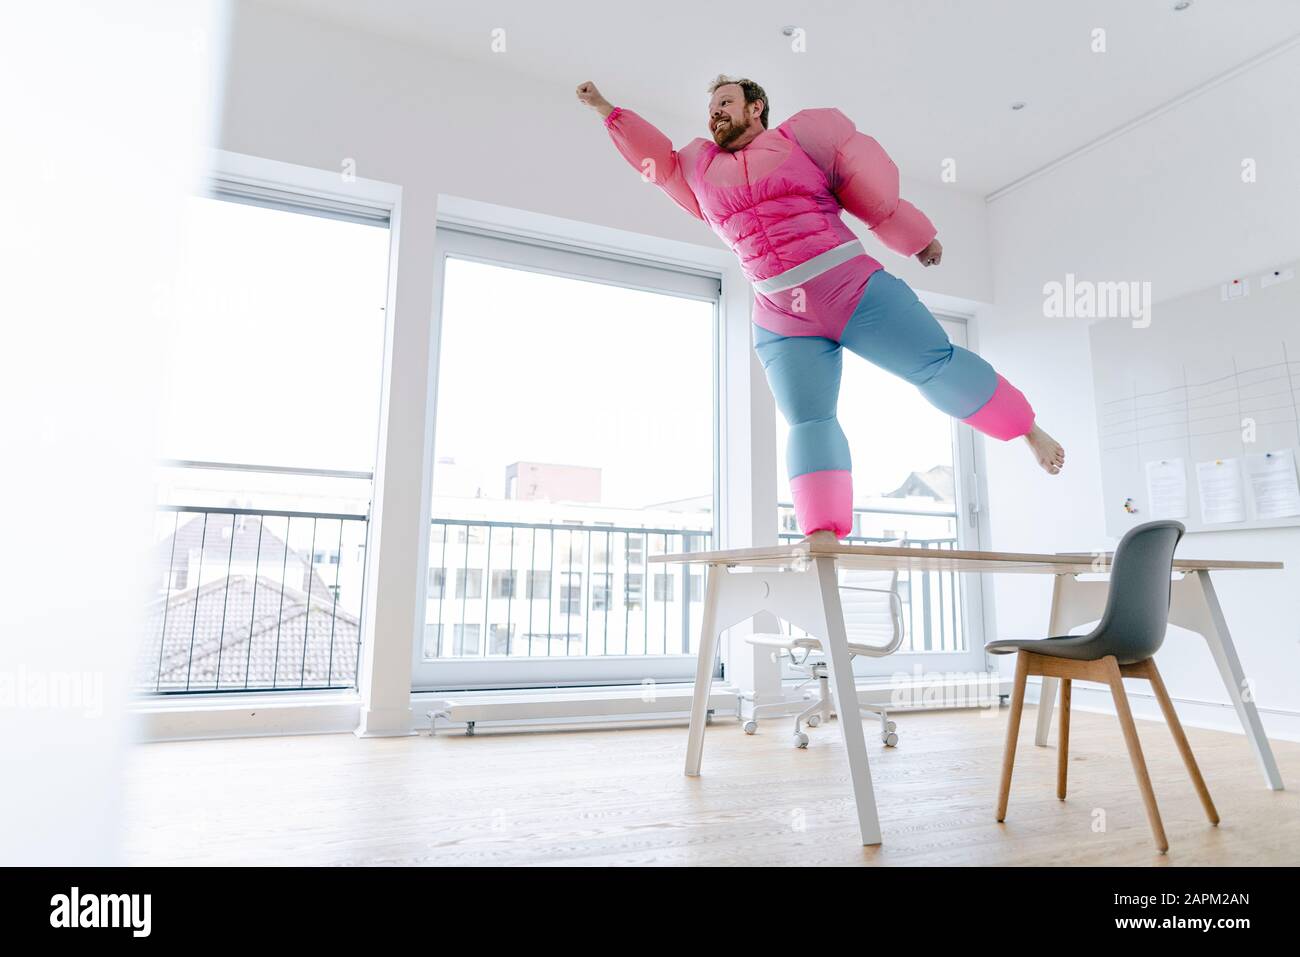 Geschäftsmann im Büro mit pinkfarbenem Bodybuilder-Kostüm, das vorgibt zu fliegen Stockfoto